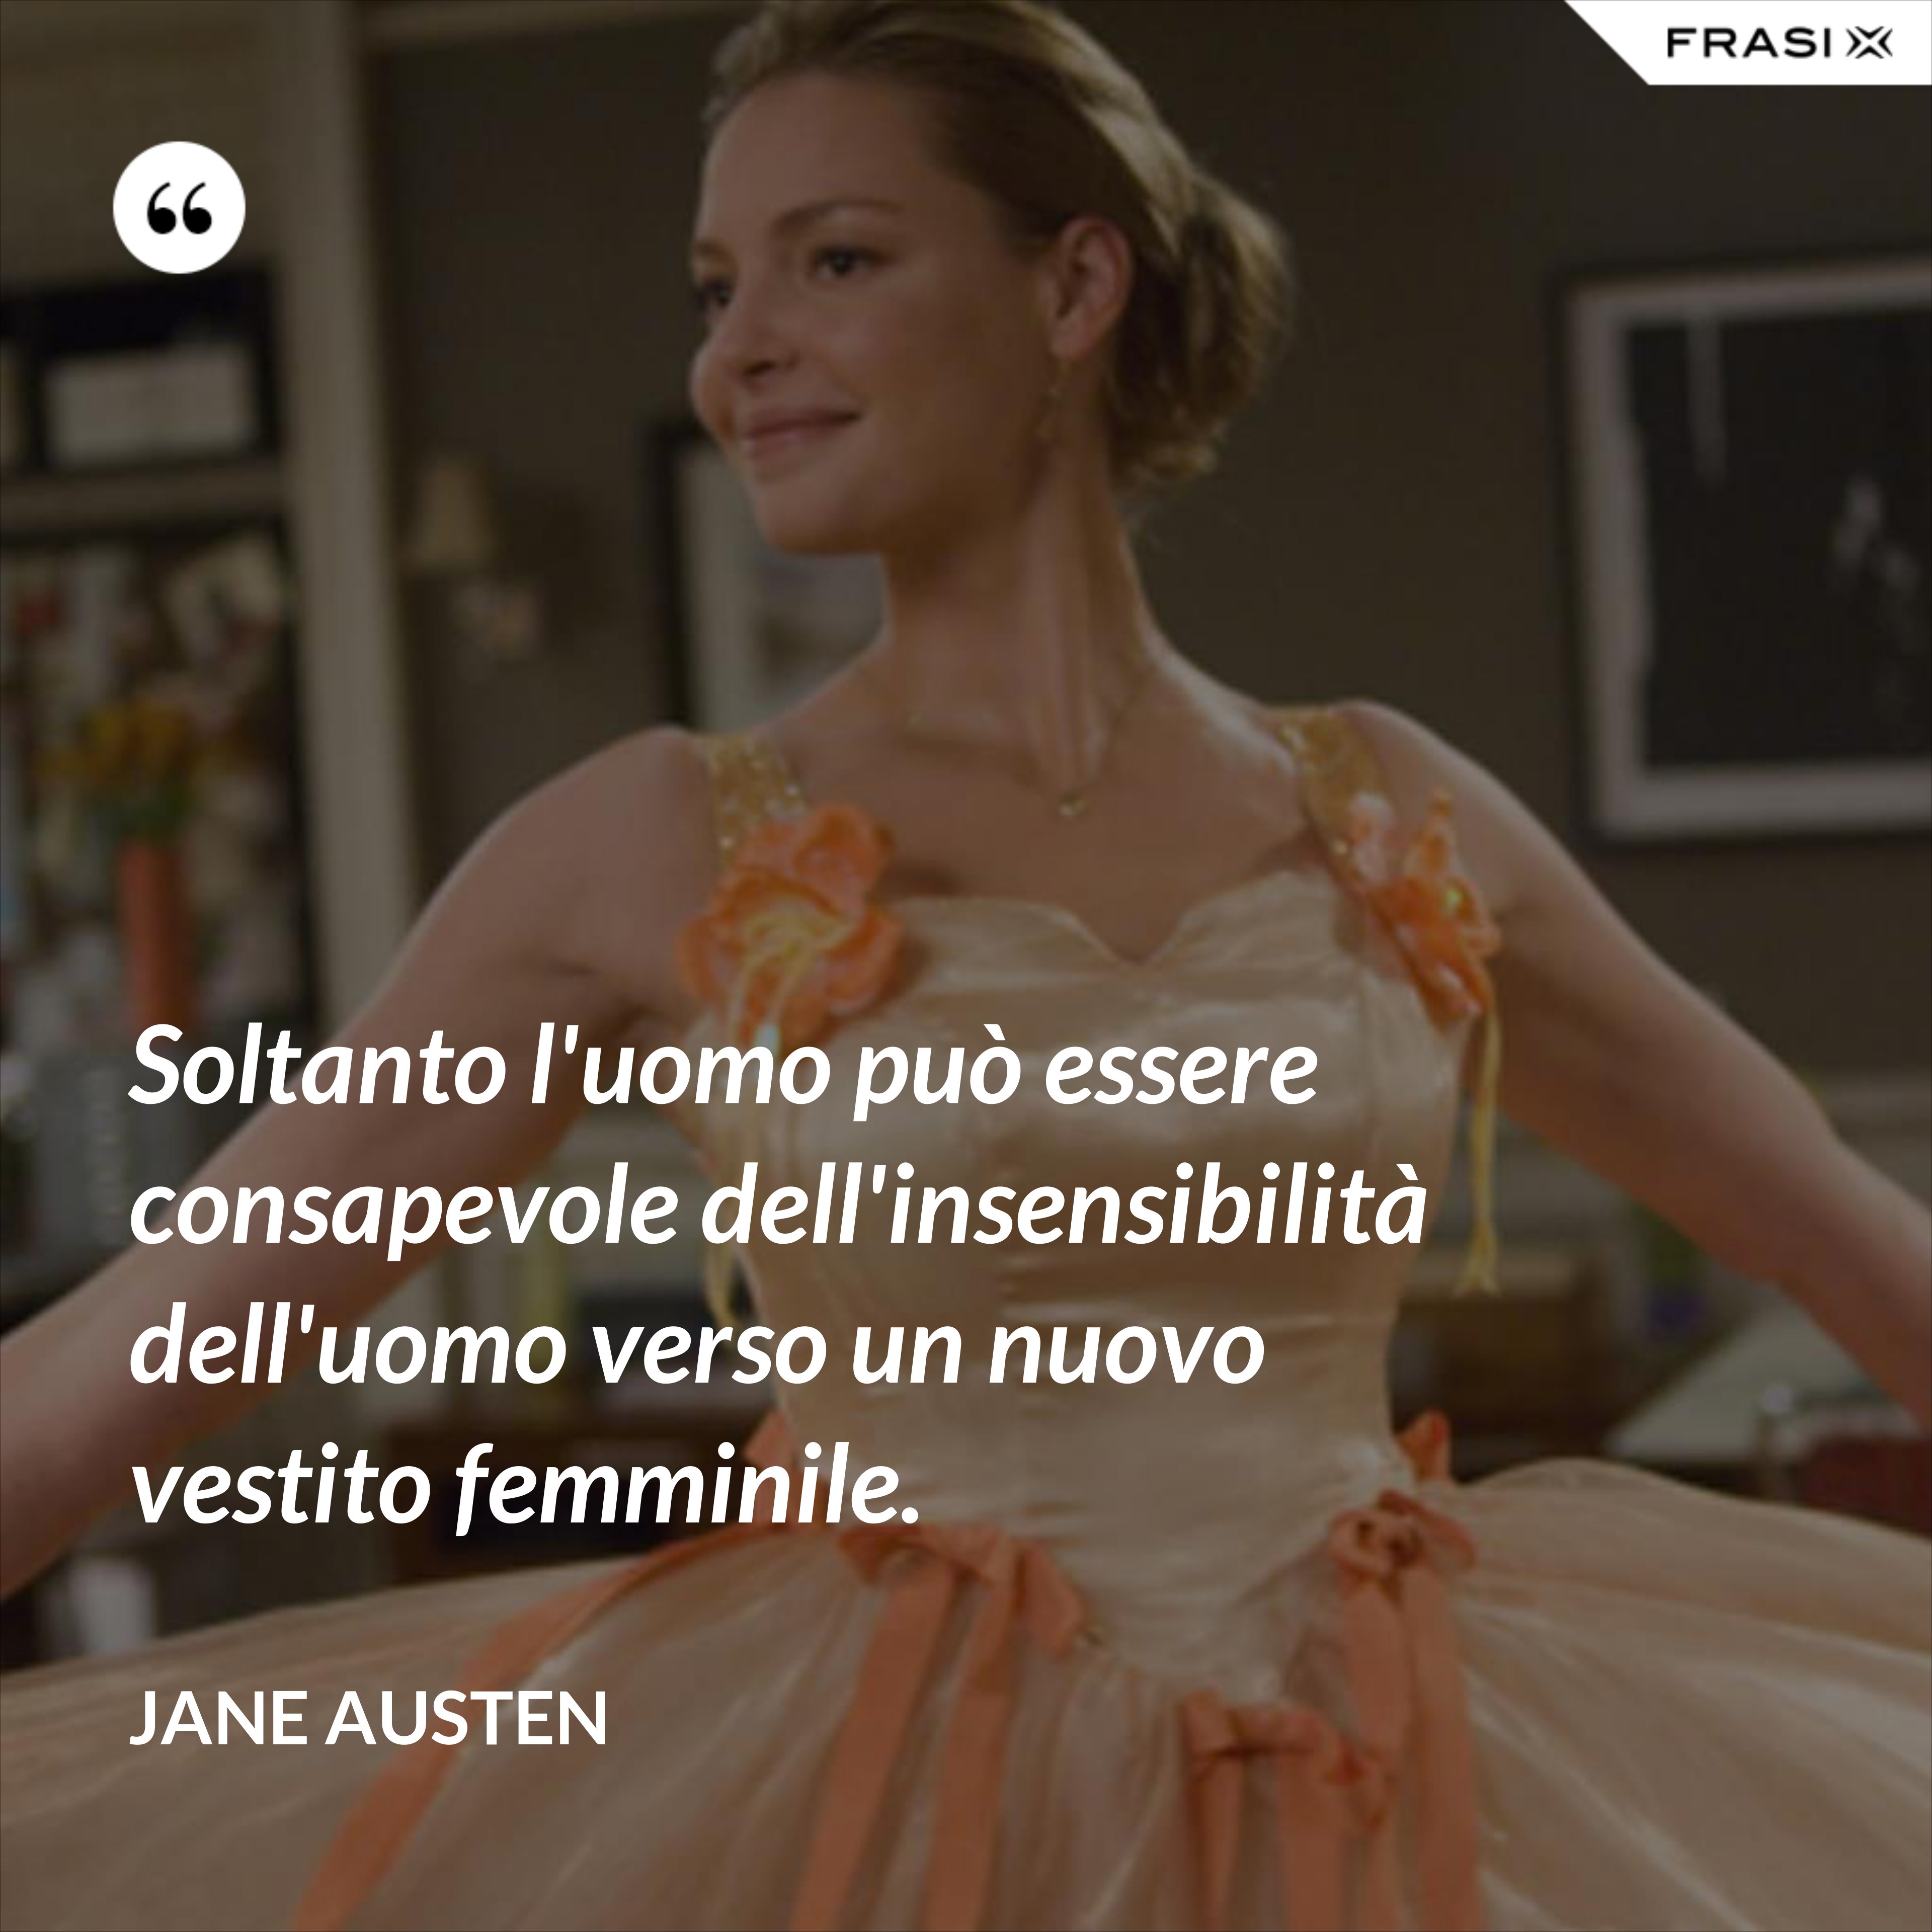 Soltanto l'uomo può essere consapevole dell'insensibilità dell'uomo verso un nuovo vestito femminile. - Jane Austen